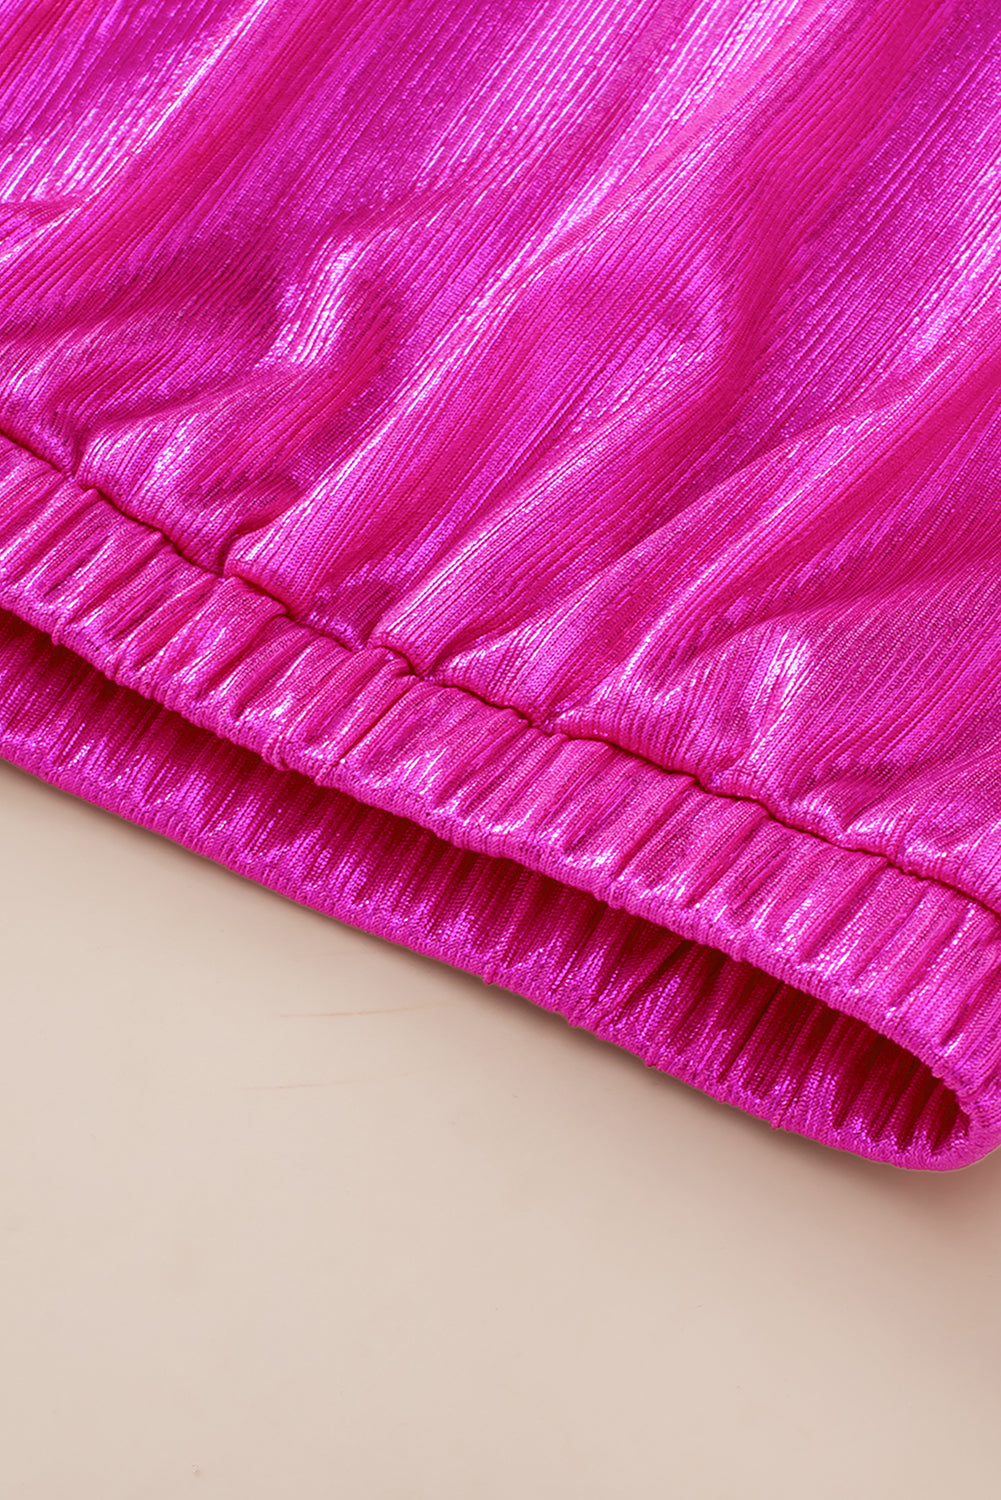 Camicetta senza schienale annodata con maniche increspate rosa brillante